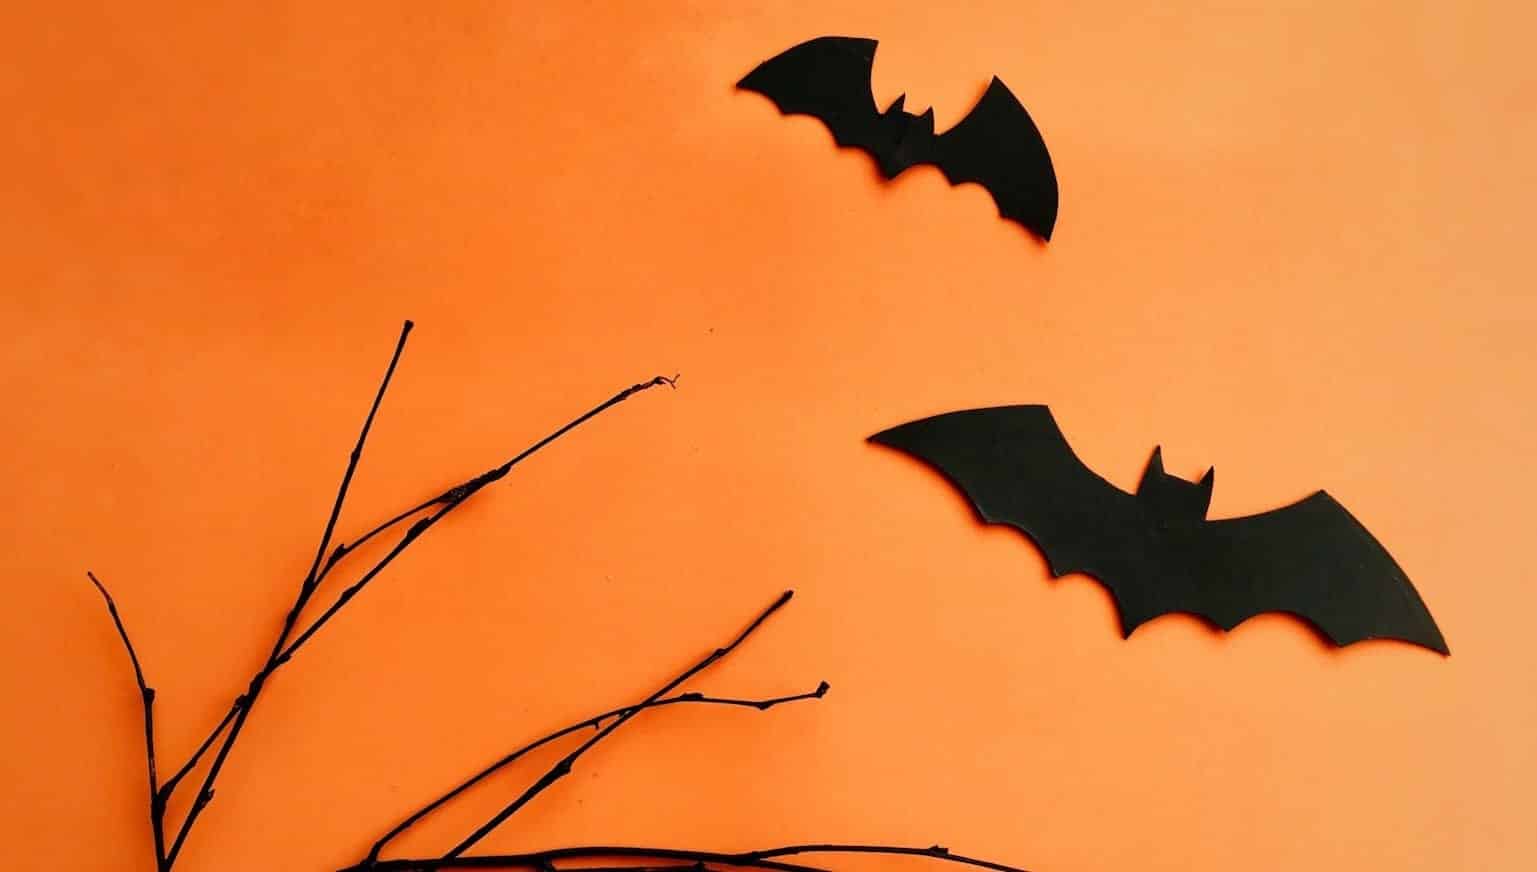 Halloween - Conheça a história, significado de tradições e mais